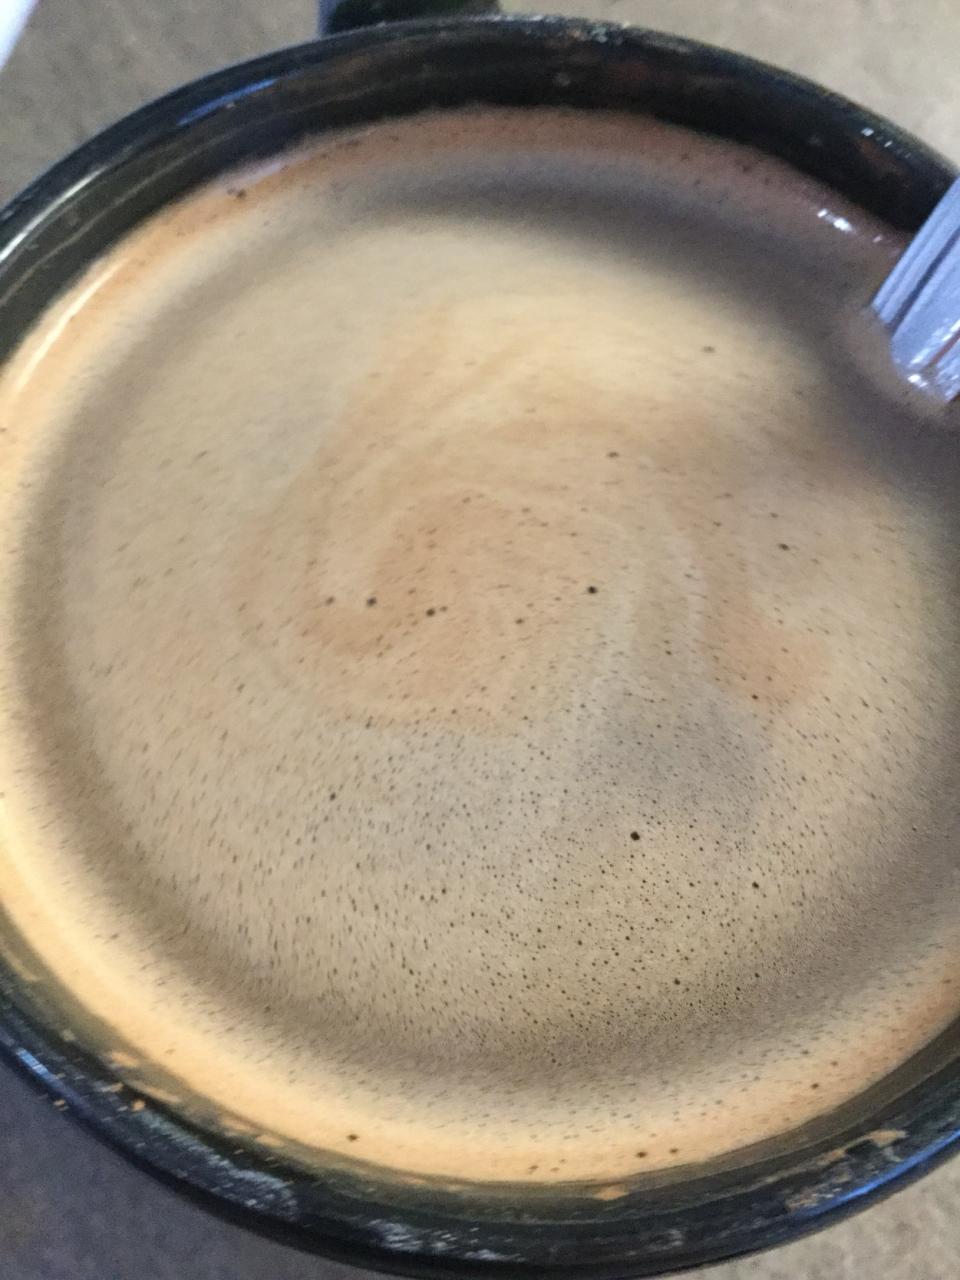 Homemade hot chocolate